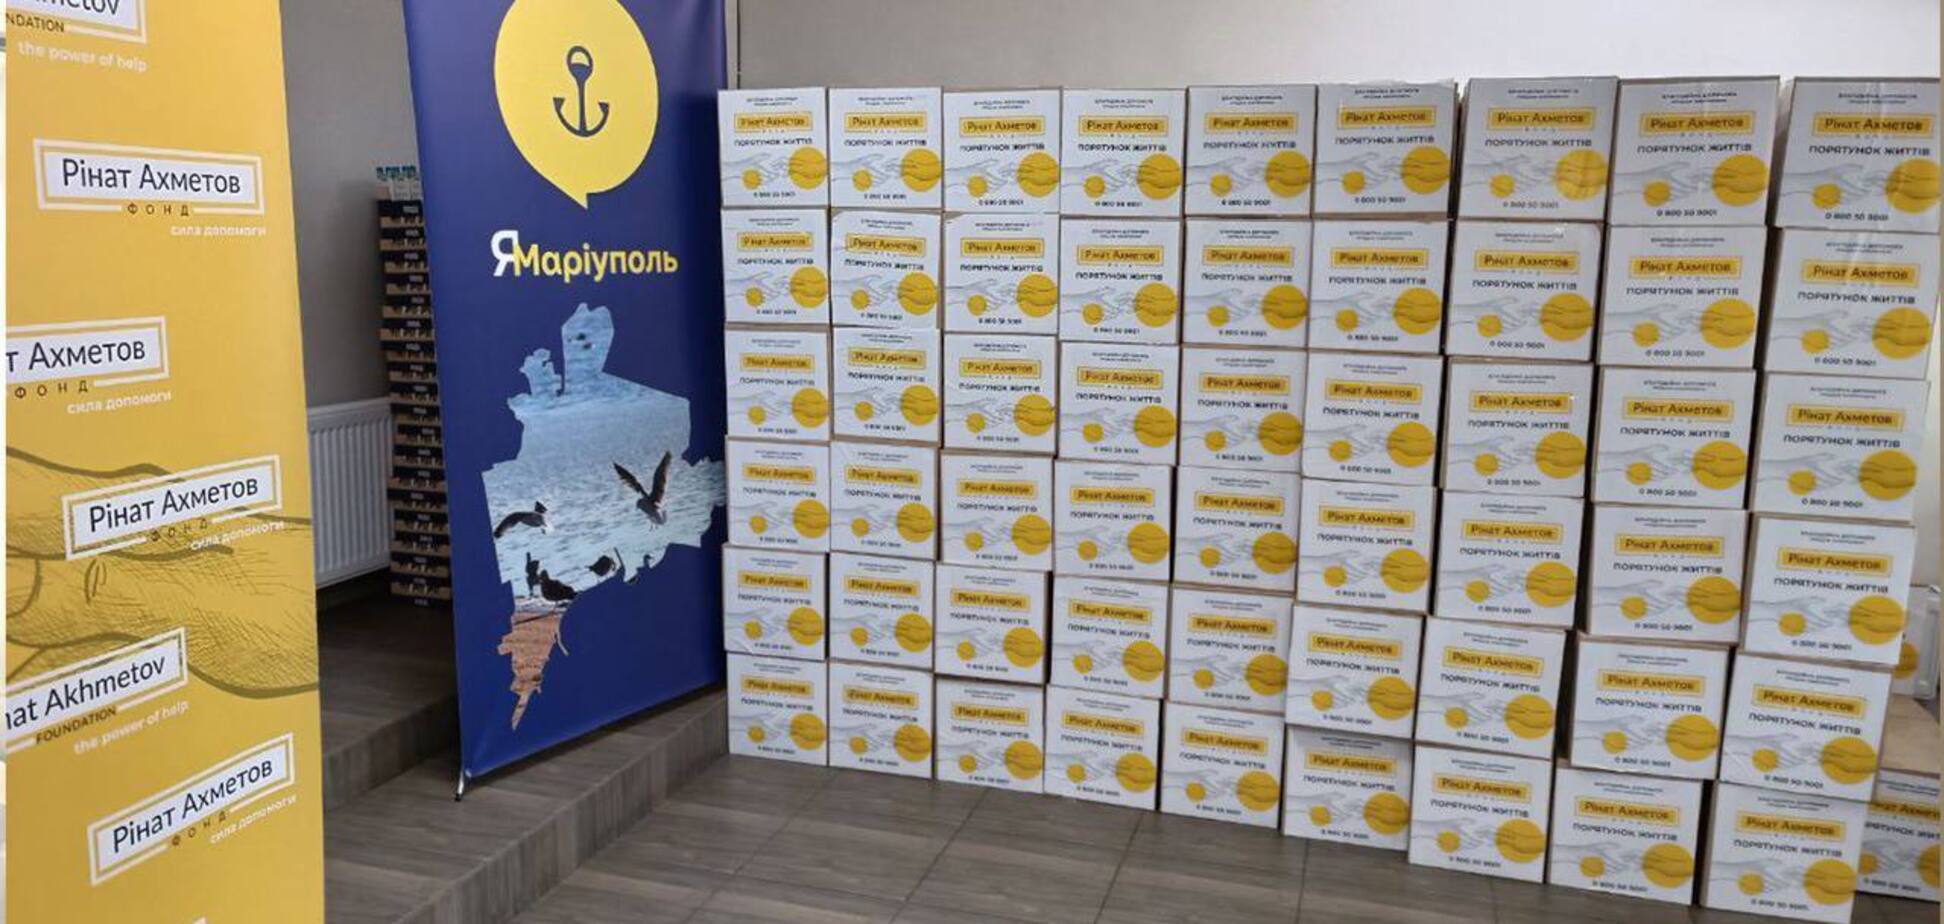 Маріупольці в Запоріжжі отримали 5 тисяч гігієнічних наборів від Фонду Ахметова